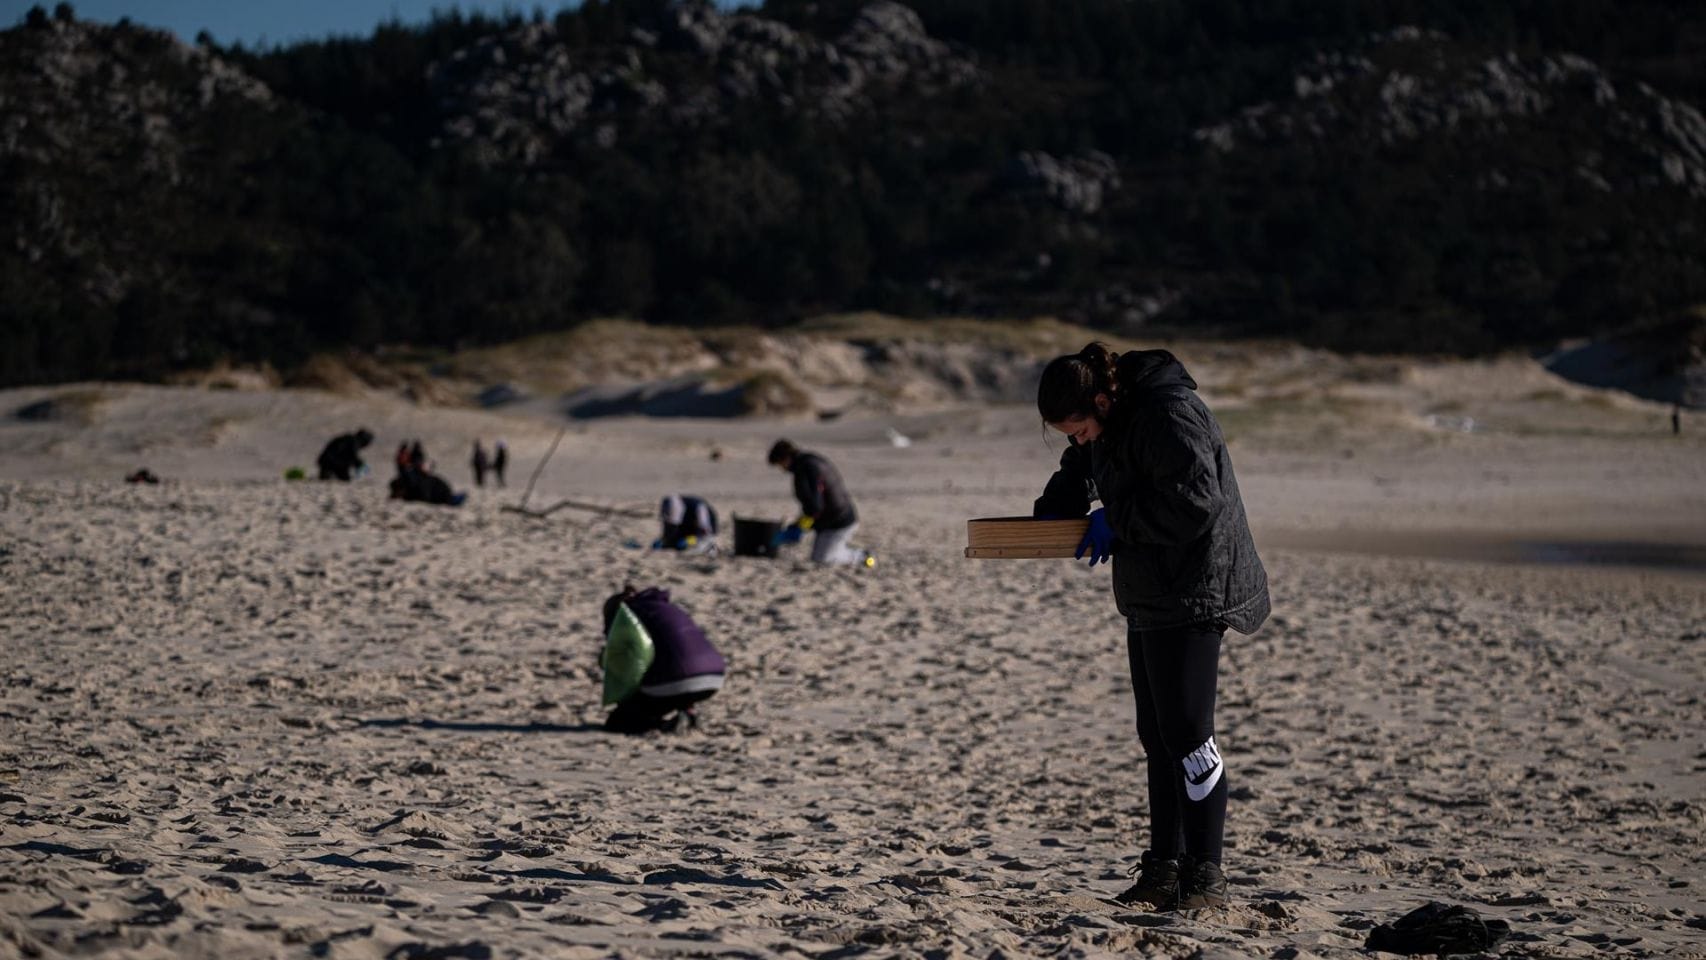 Voluntarios participan en la recogida de pellets de plástico en una playa de Muros.